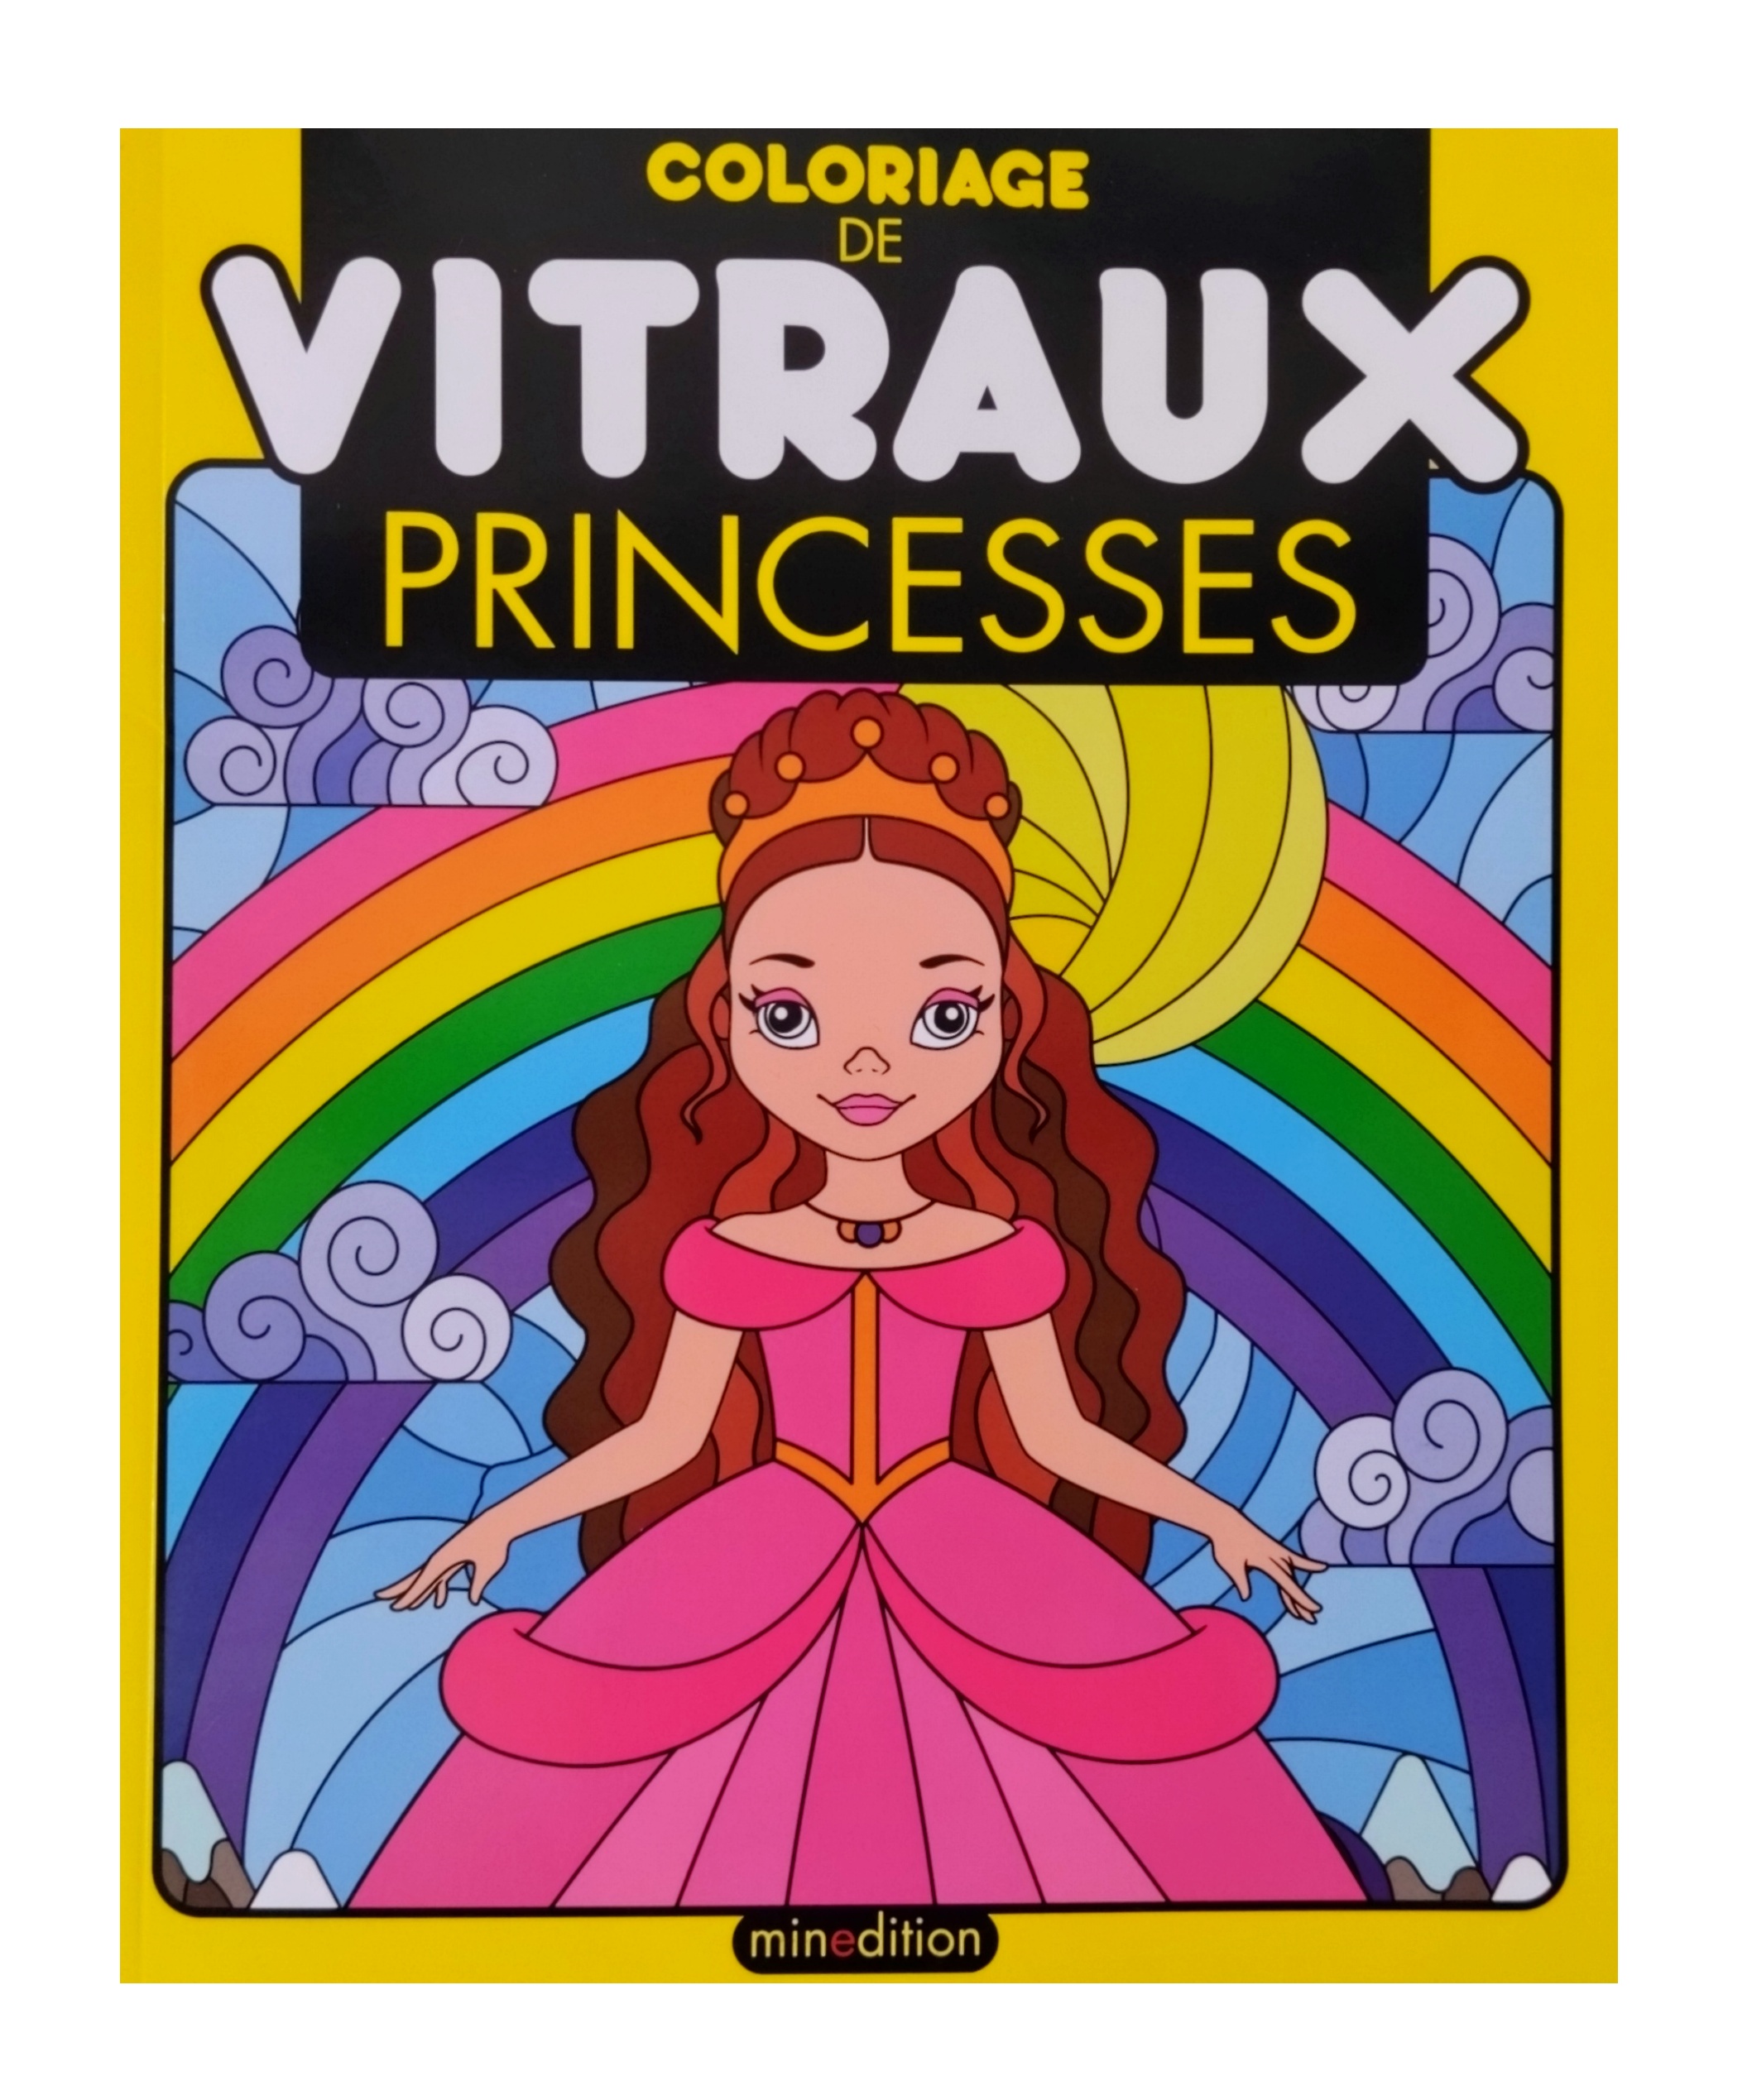 coloriage vitraux "Princesses"